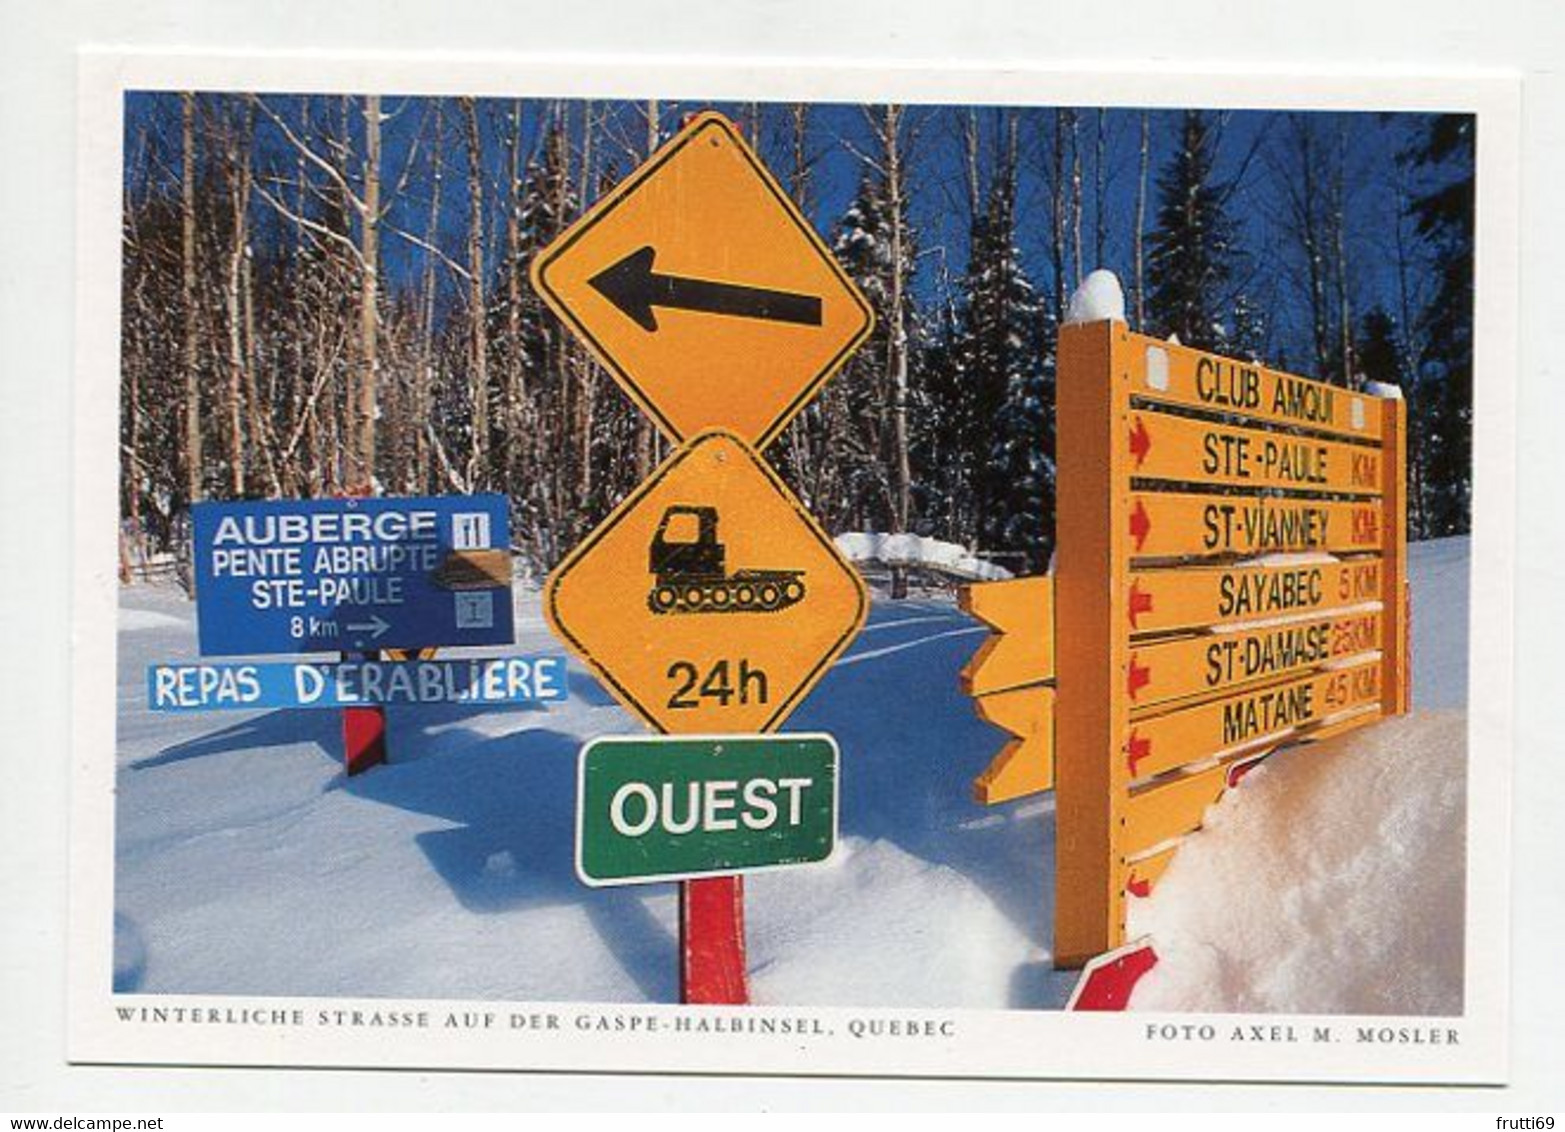 AK 074841 CANADA - Quebec - Winterliche Strasse Auf Der Gaspe-Halbinsel - Gaspé